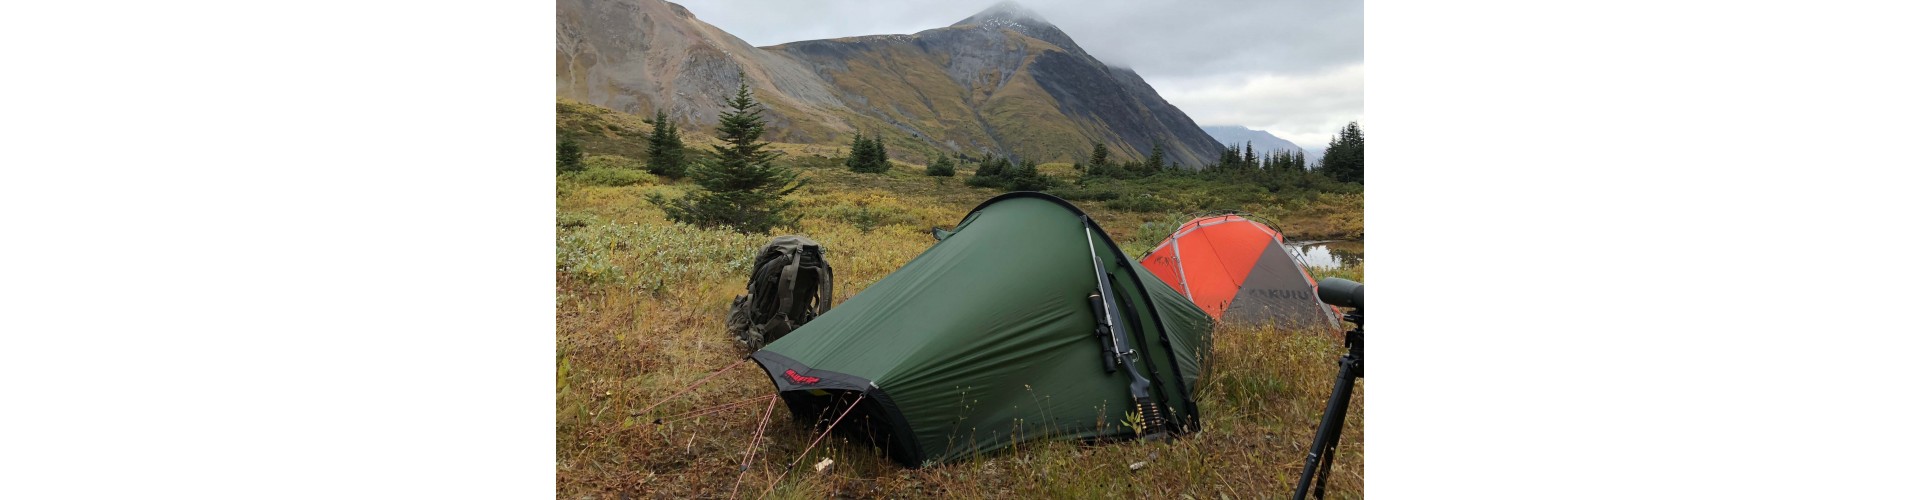 Охотничьи шатры vs палатки: Преимущества и недостатки каждого вида жилья